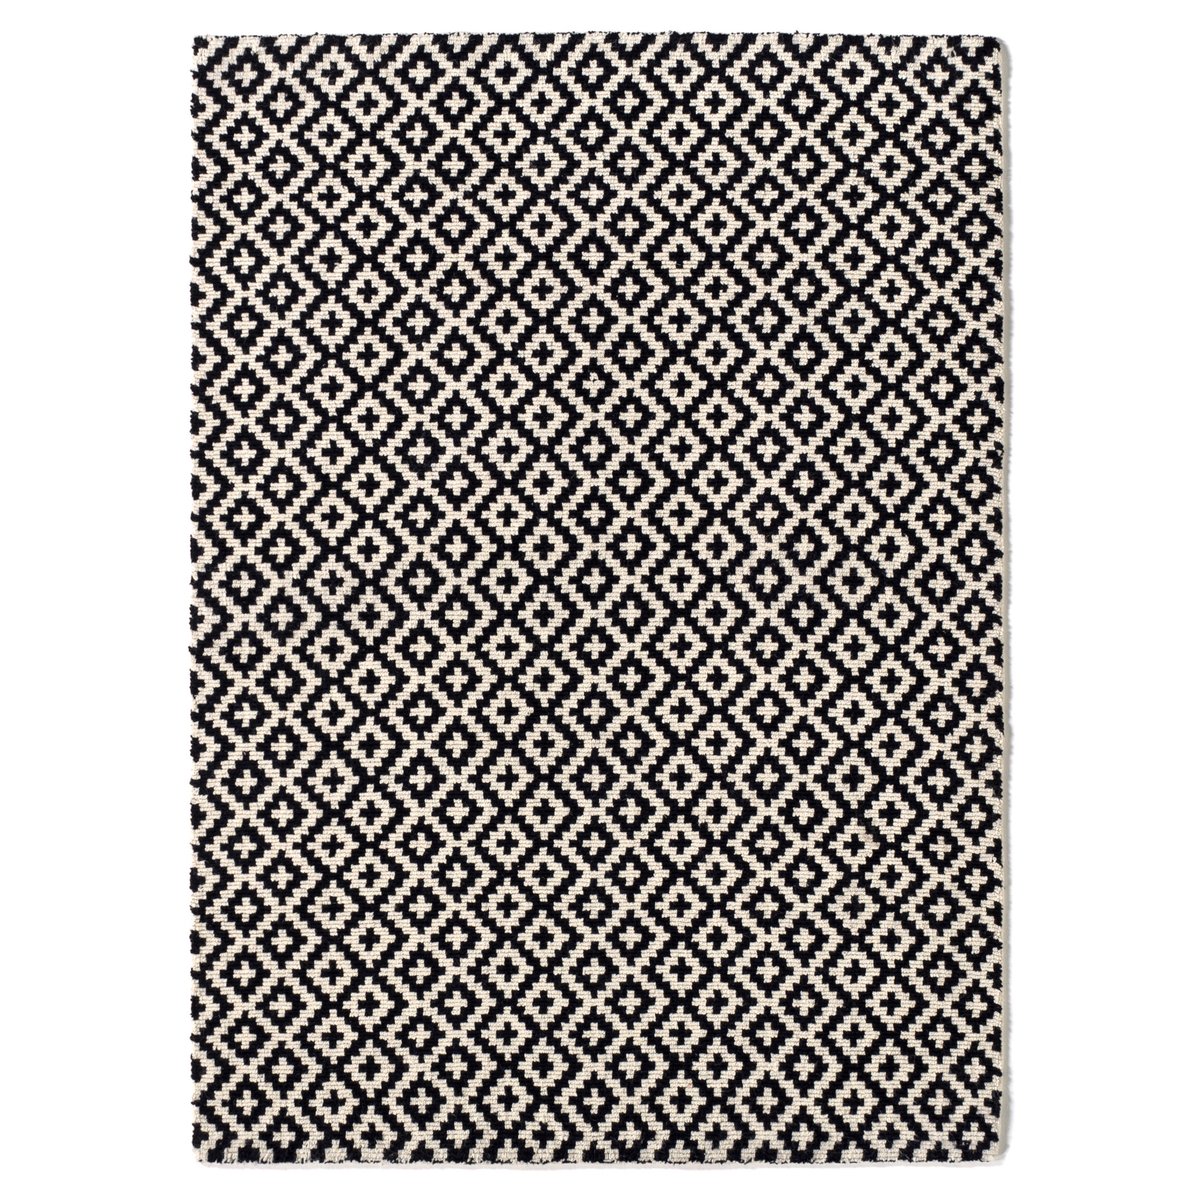 Ковер La Redoute Шерстяной ворсистый Nevio 200 x 290 см черный, размер 200 x 290 см - фото 1